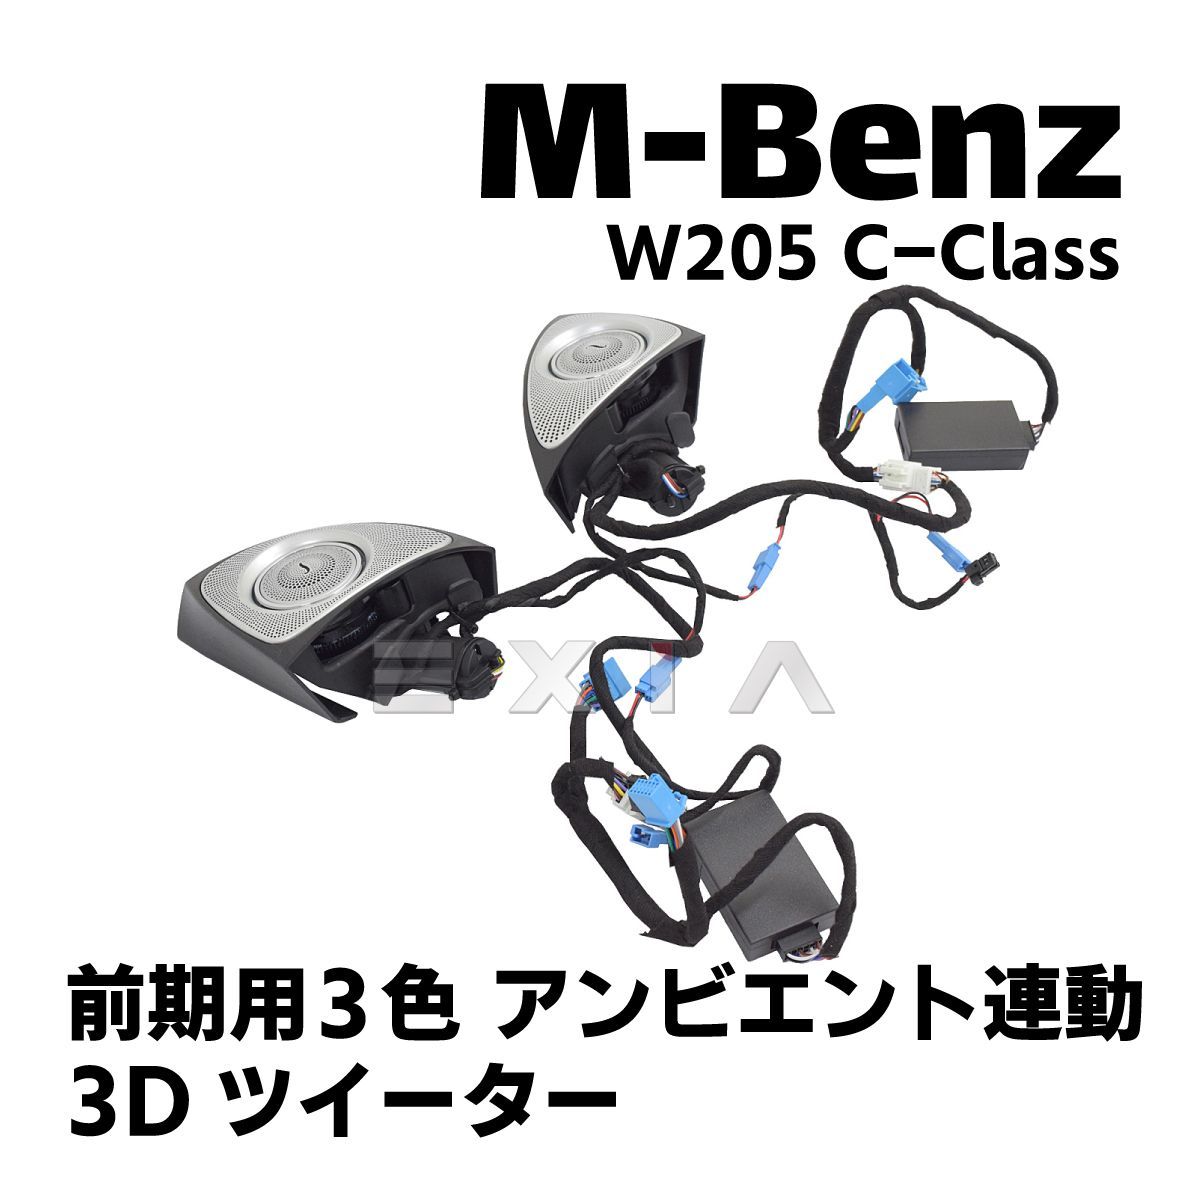 3DスピーカーツイーターW205 Cクラス メルセデスベンツ 3Dツイーター